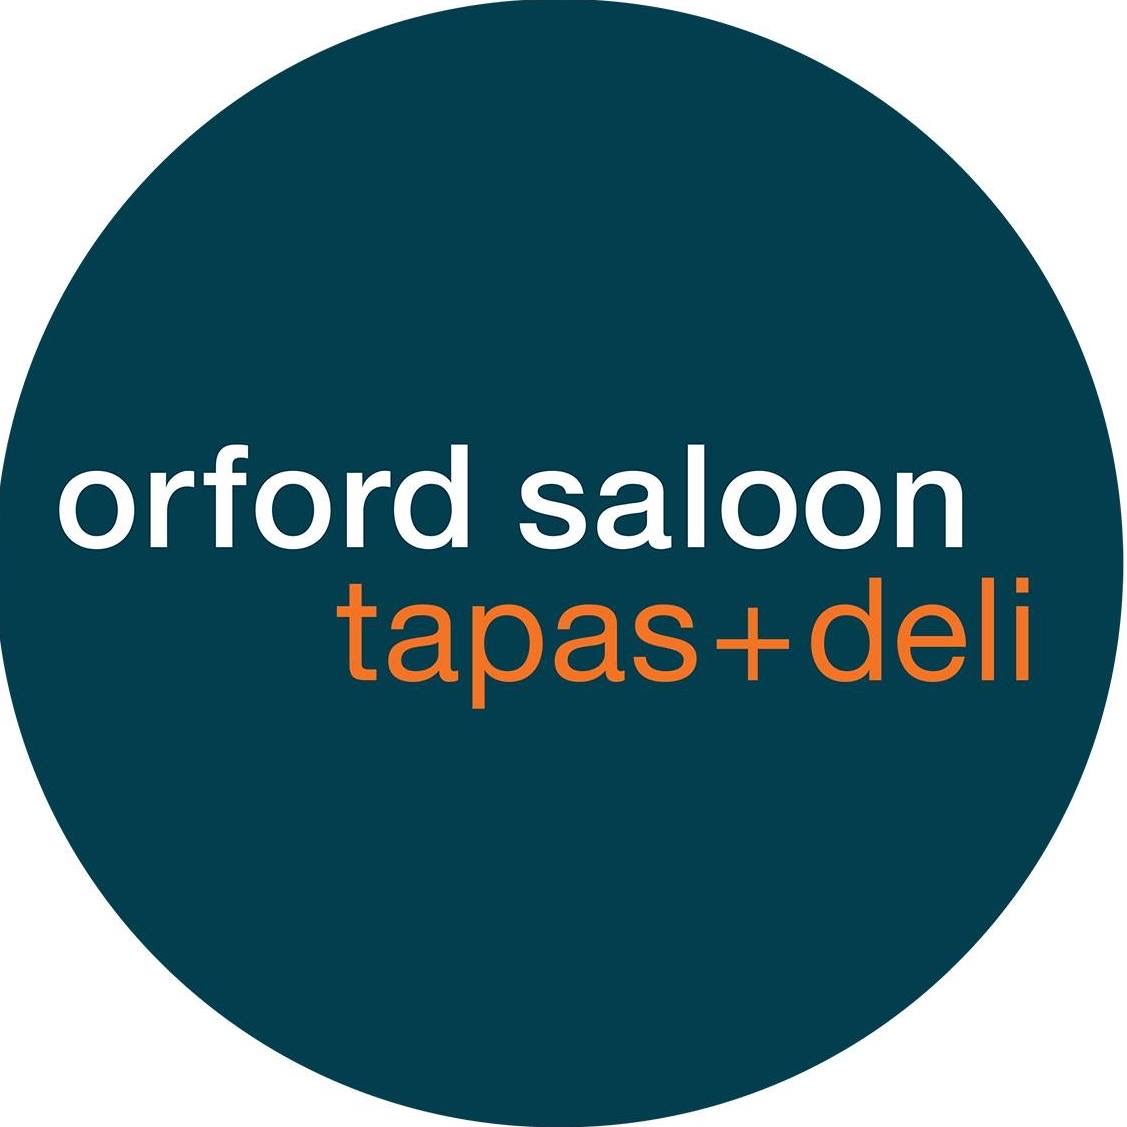 Orford Saloon Tapas + Deli